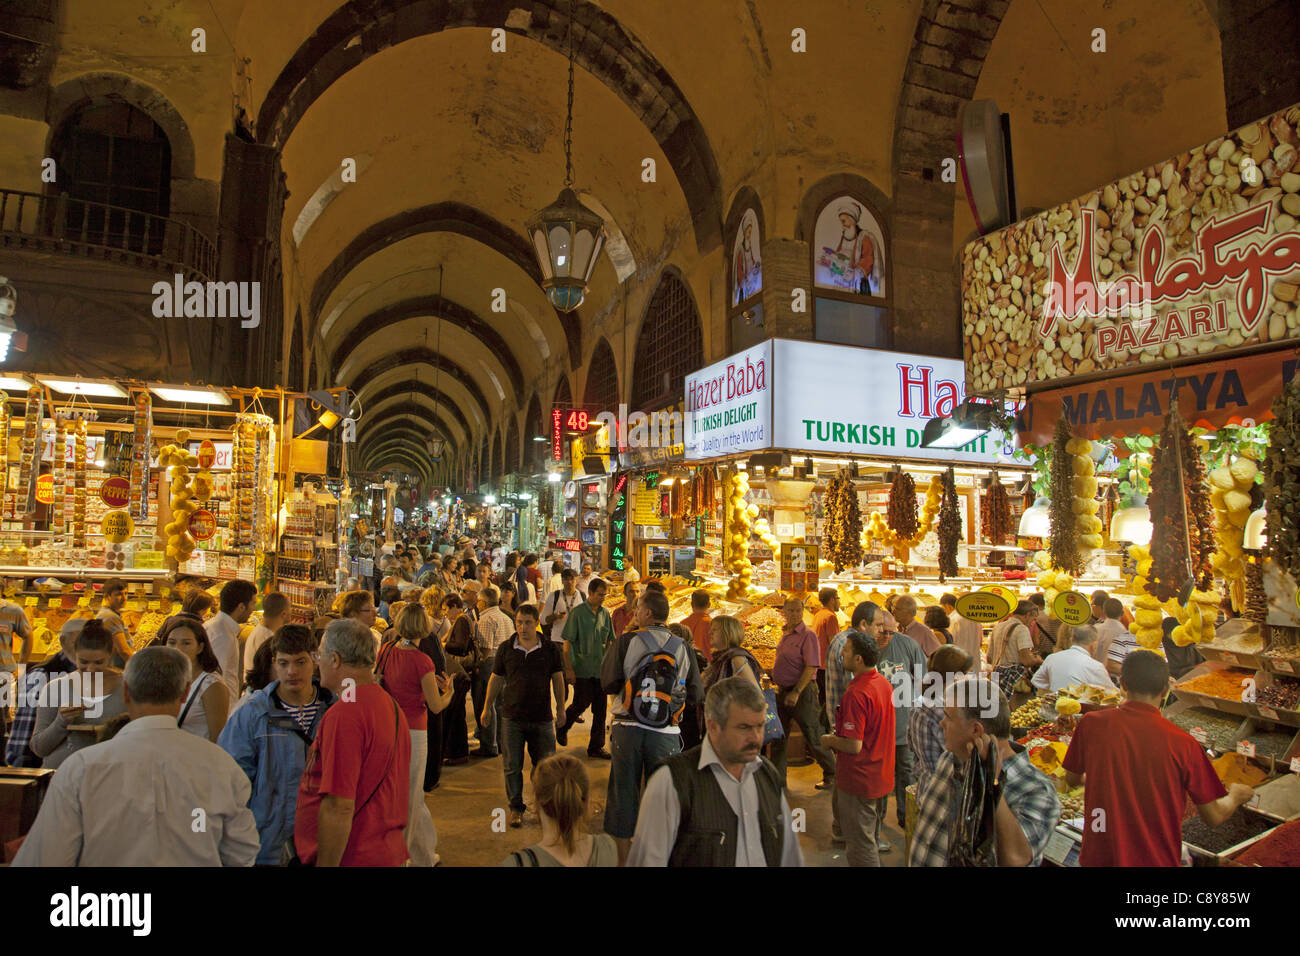 Misir Carsisi e il Bazar delle Spezie, interieur, affollato, Istanbul, Turchia , in Europa, Foto Stock